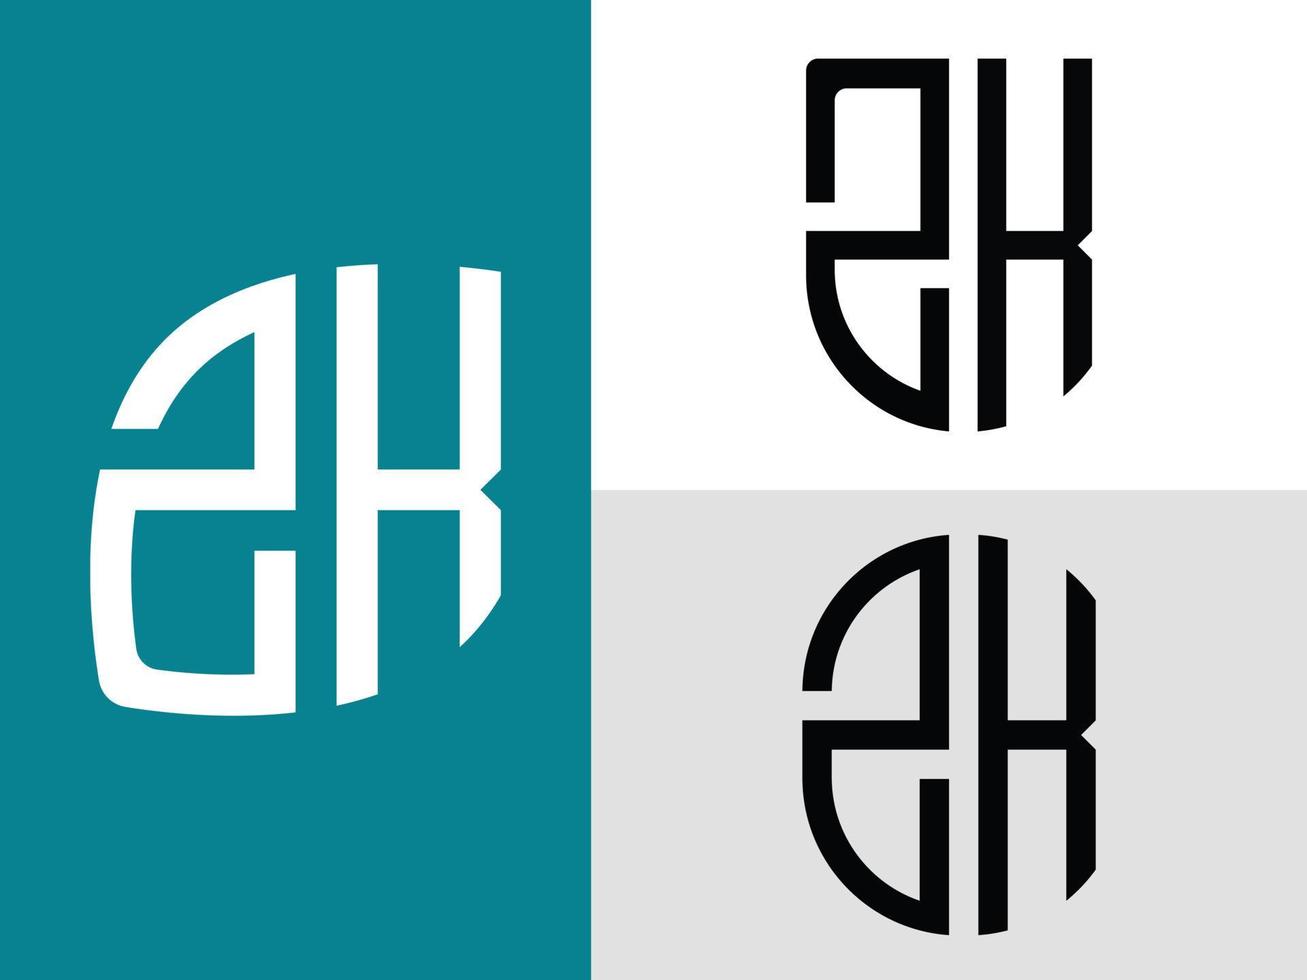 kreative anfangsbuchstaben zk logo designs paket. vektor